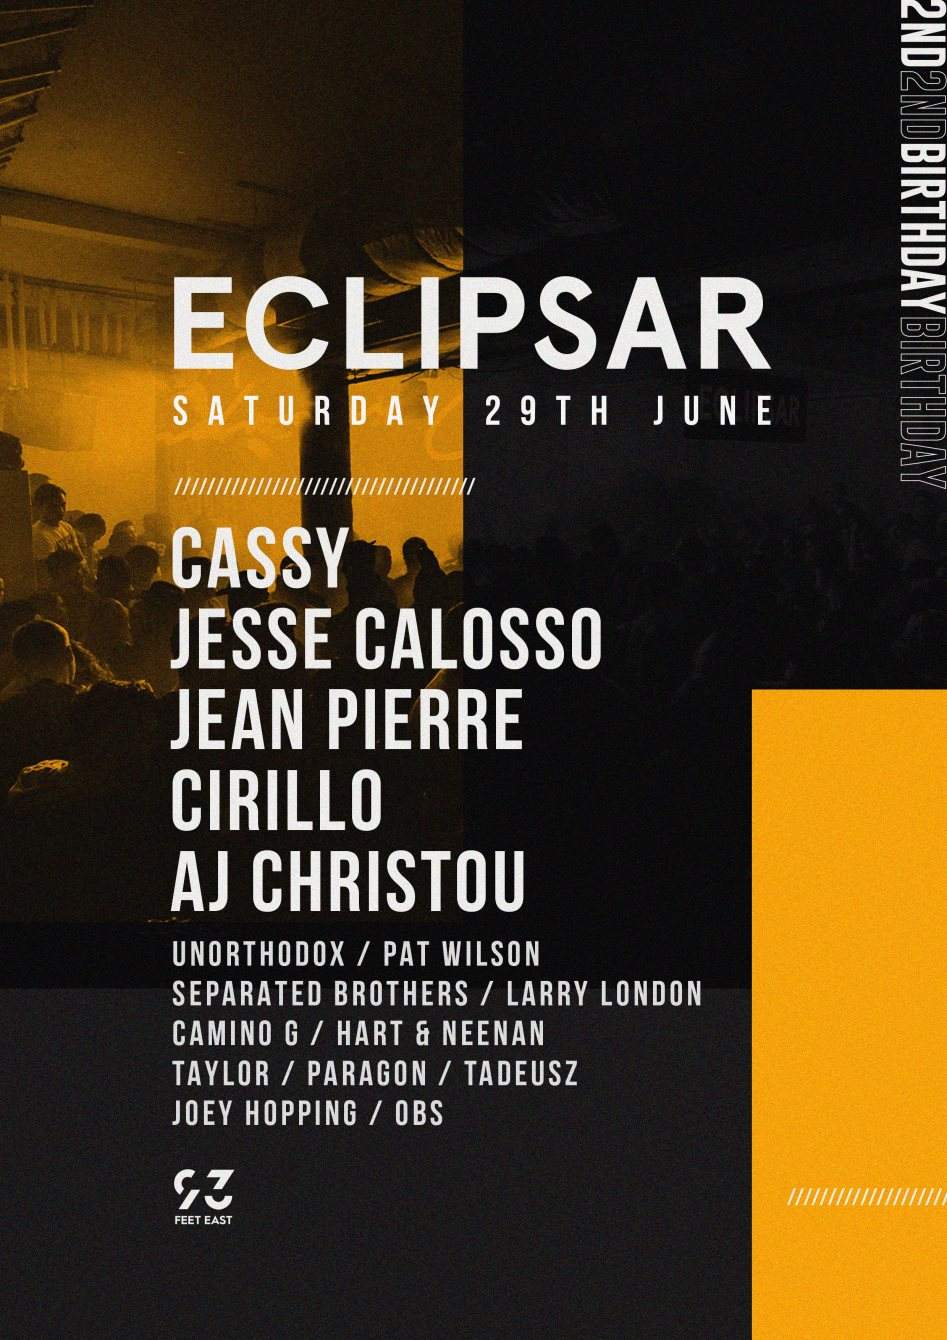 ECLIPSAR with Cassy, Jesse Calosso b2b Jean Pierre, Cirillo, AJ Christou & More - フライヤー表